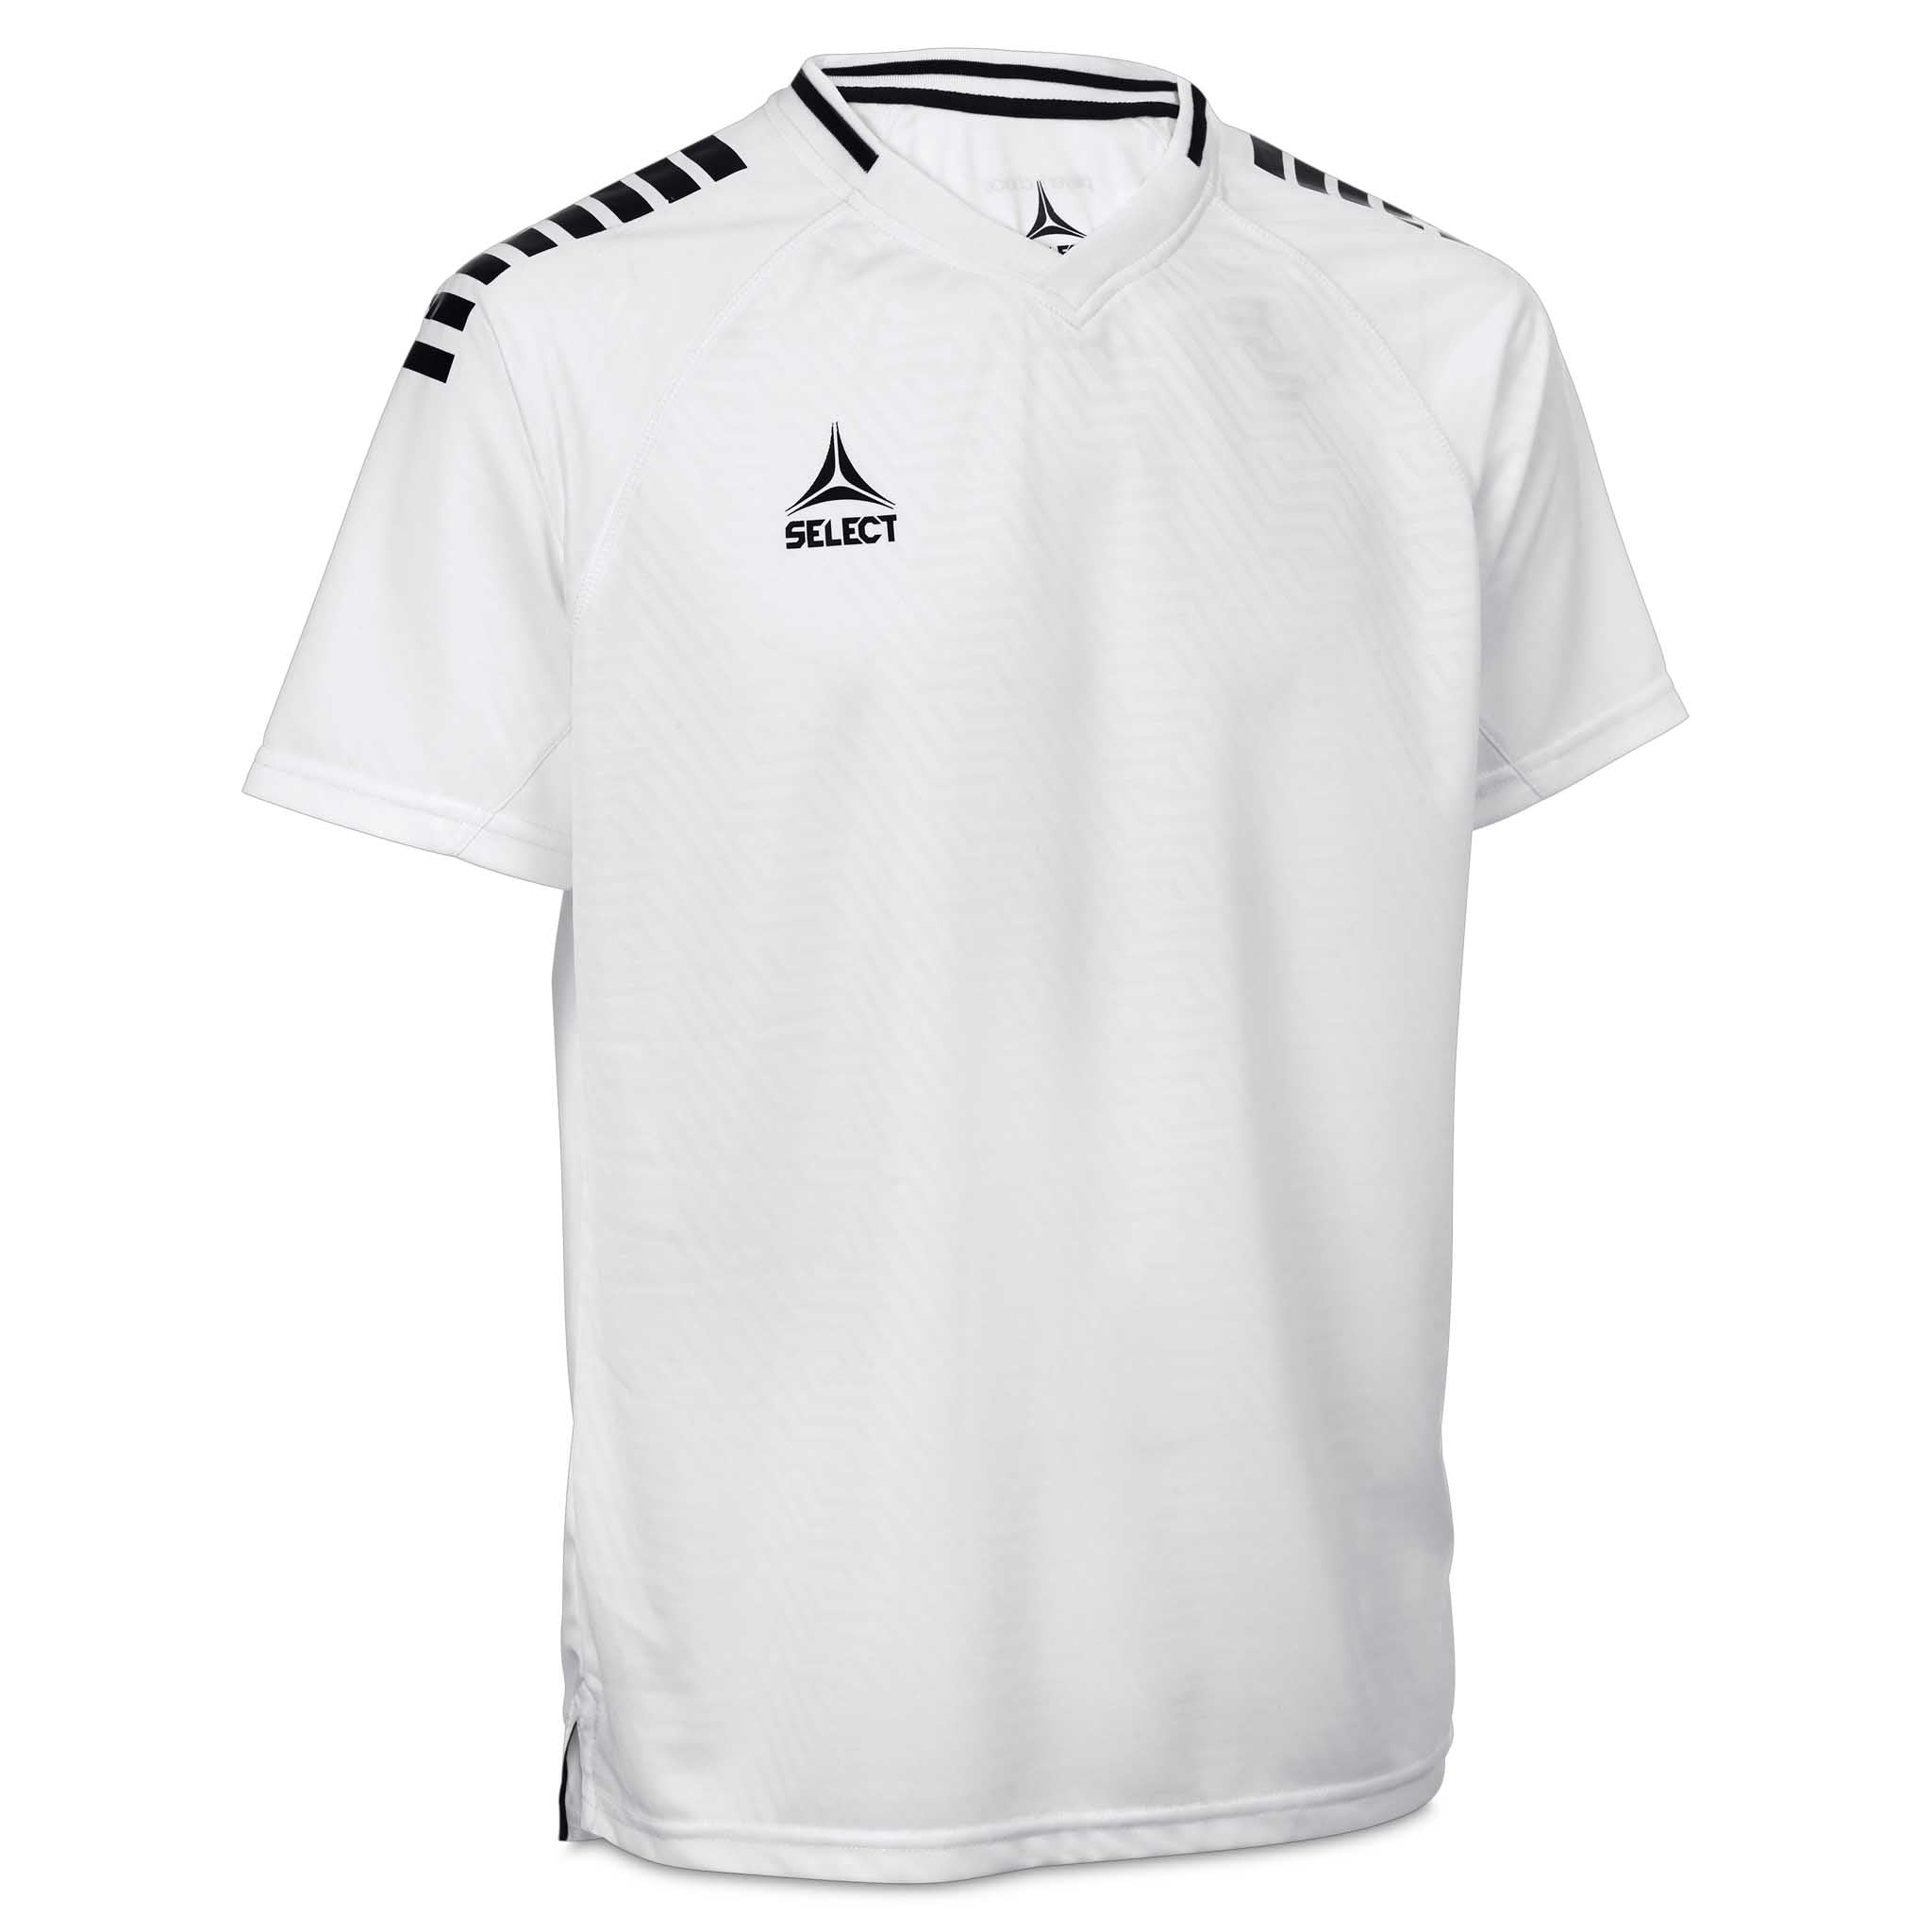 Monaco Player shirt S/S - Kids #colour_white/black